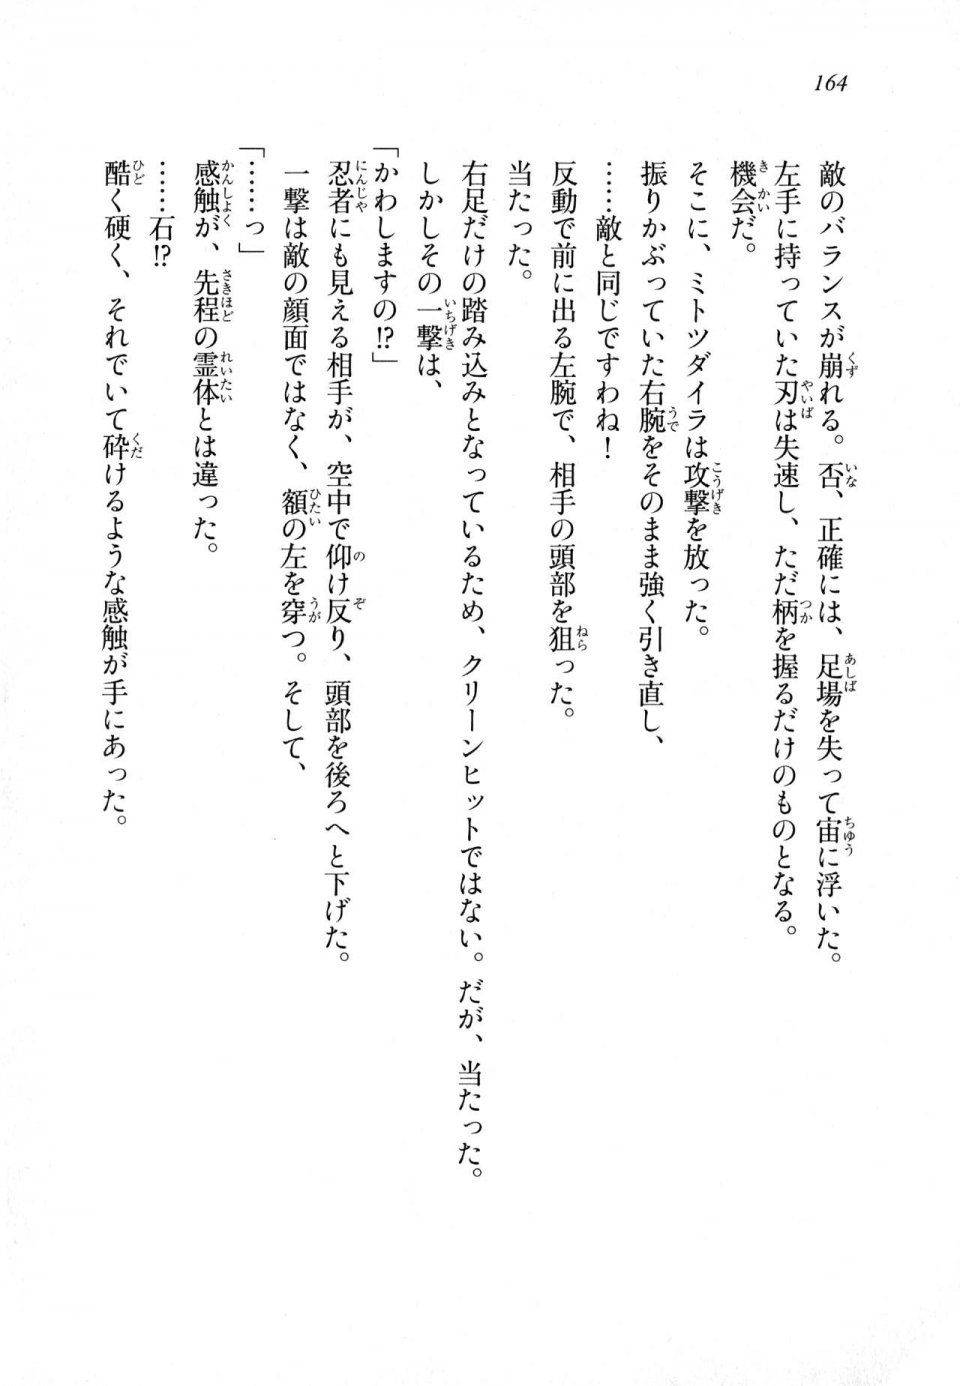 Kyoukai Senjou no Horizon LN Sidestory Vol 1 - Photo #162